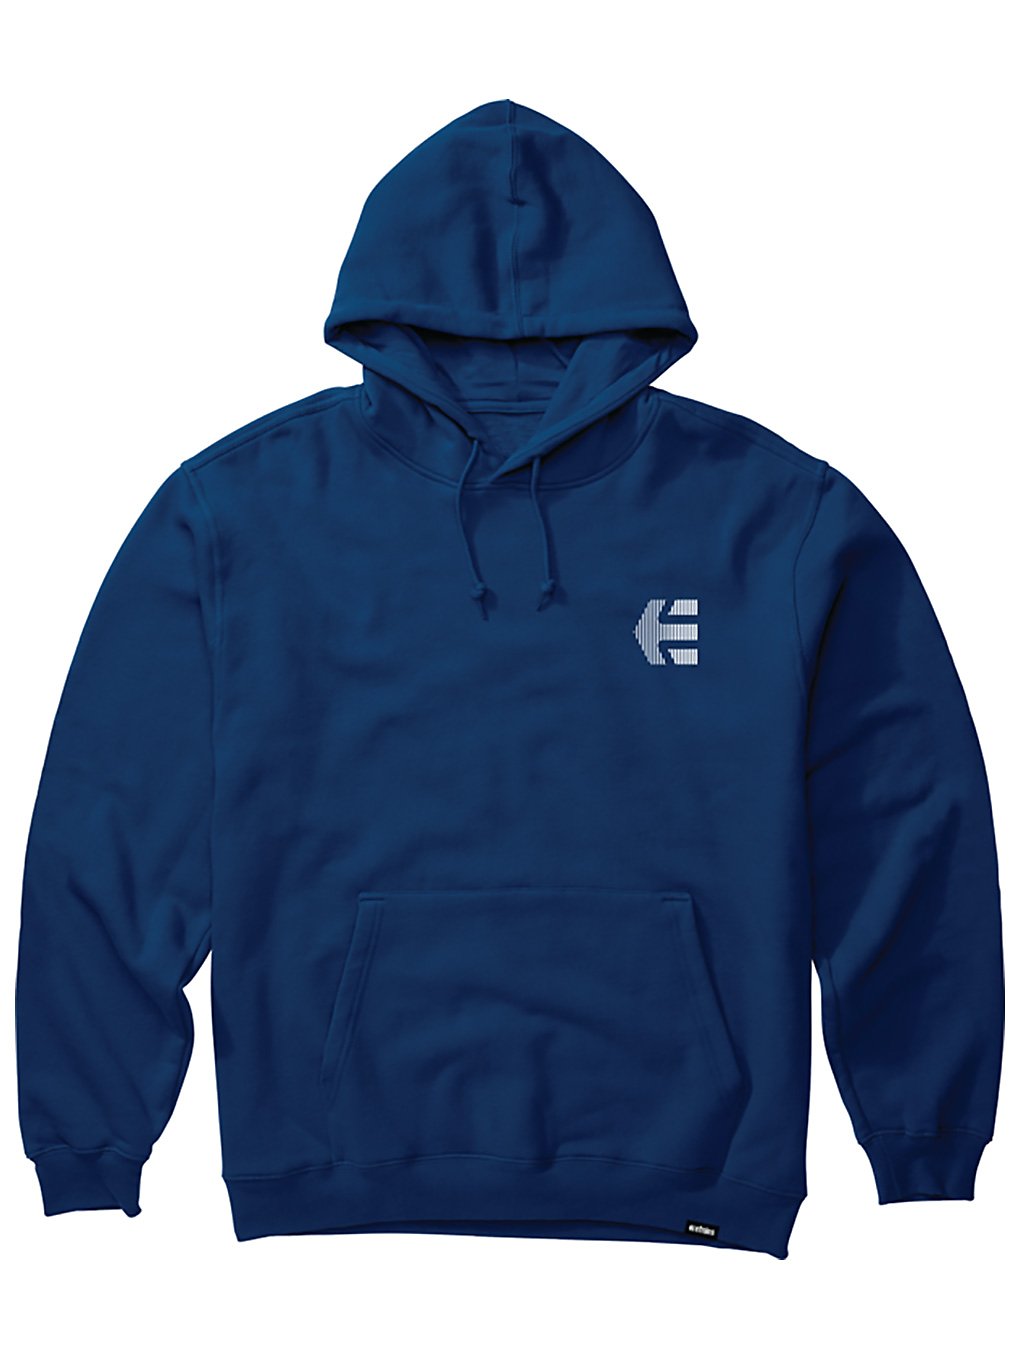 Etnies team fleece hoodie sininen, etnies